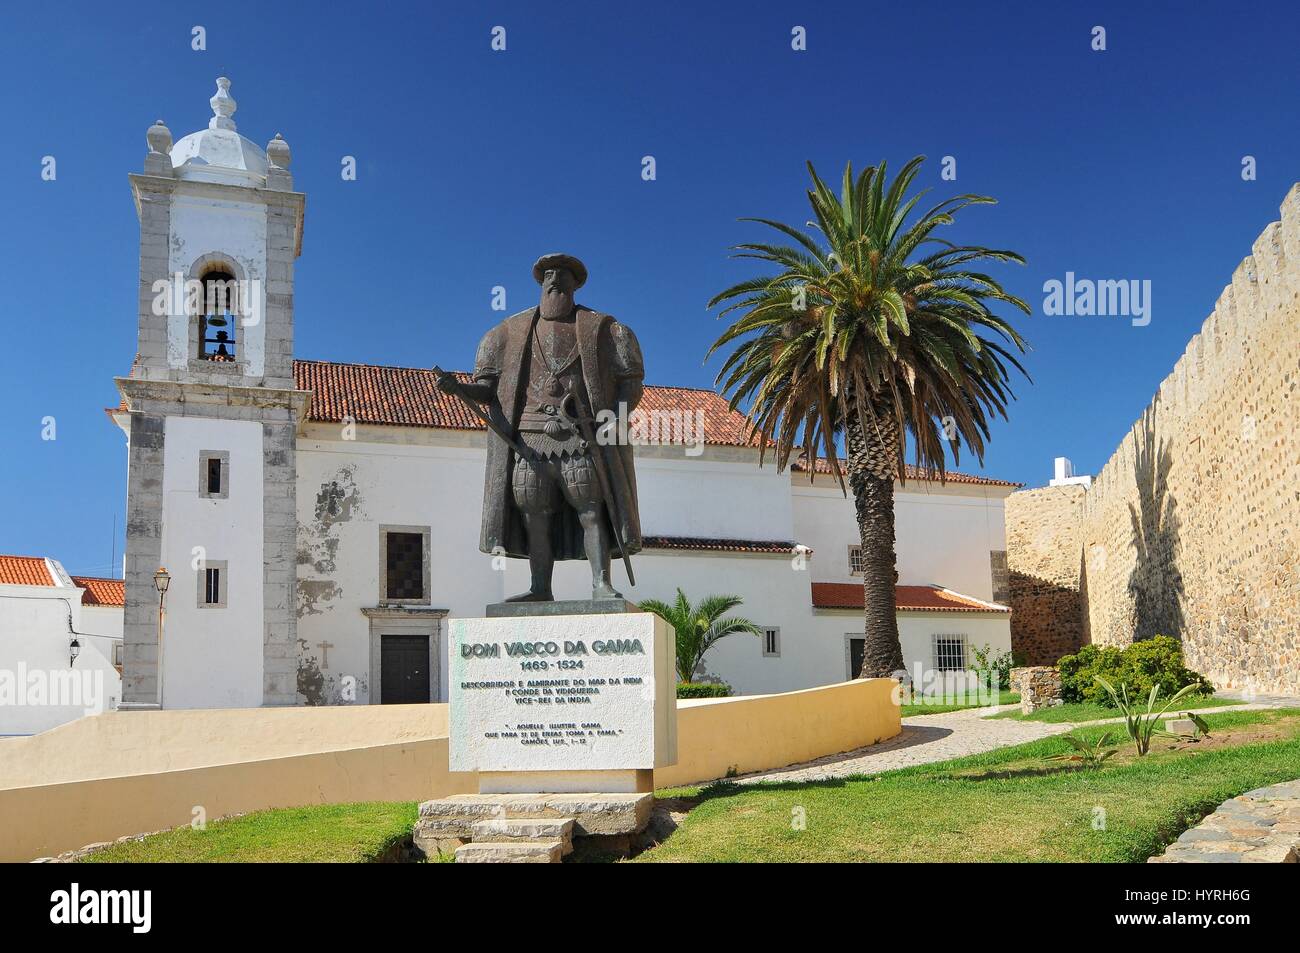 Le Portugal, Sines, statue de Dom Vasco da Gama Banque D'Images